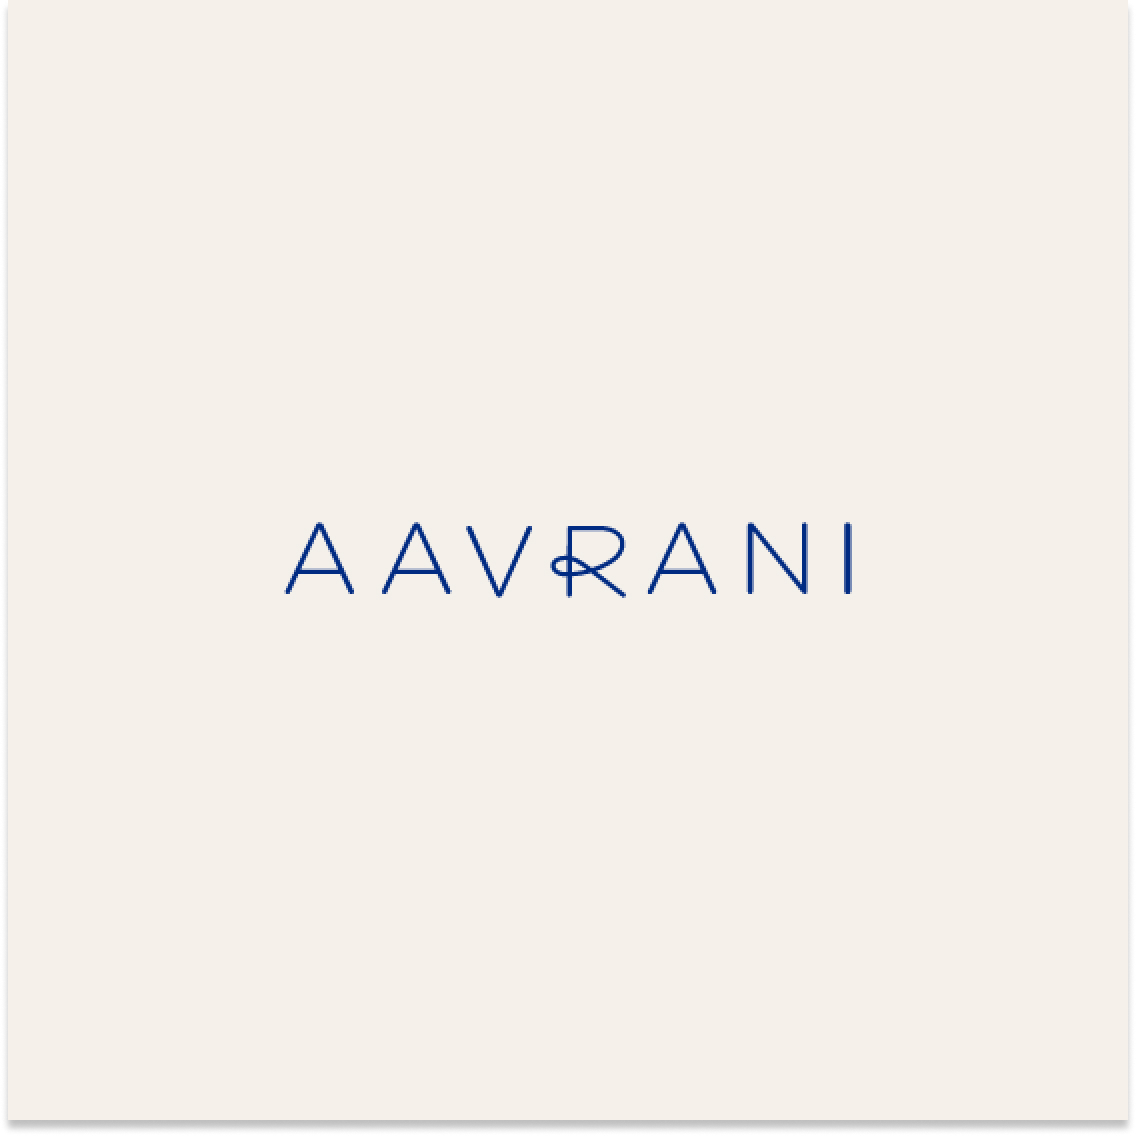 Dear Fellow Logo of Aavrani